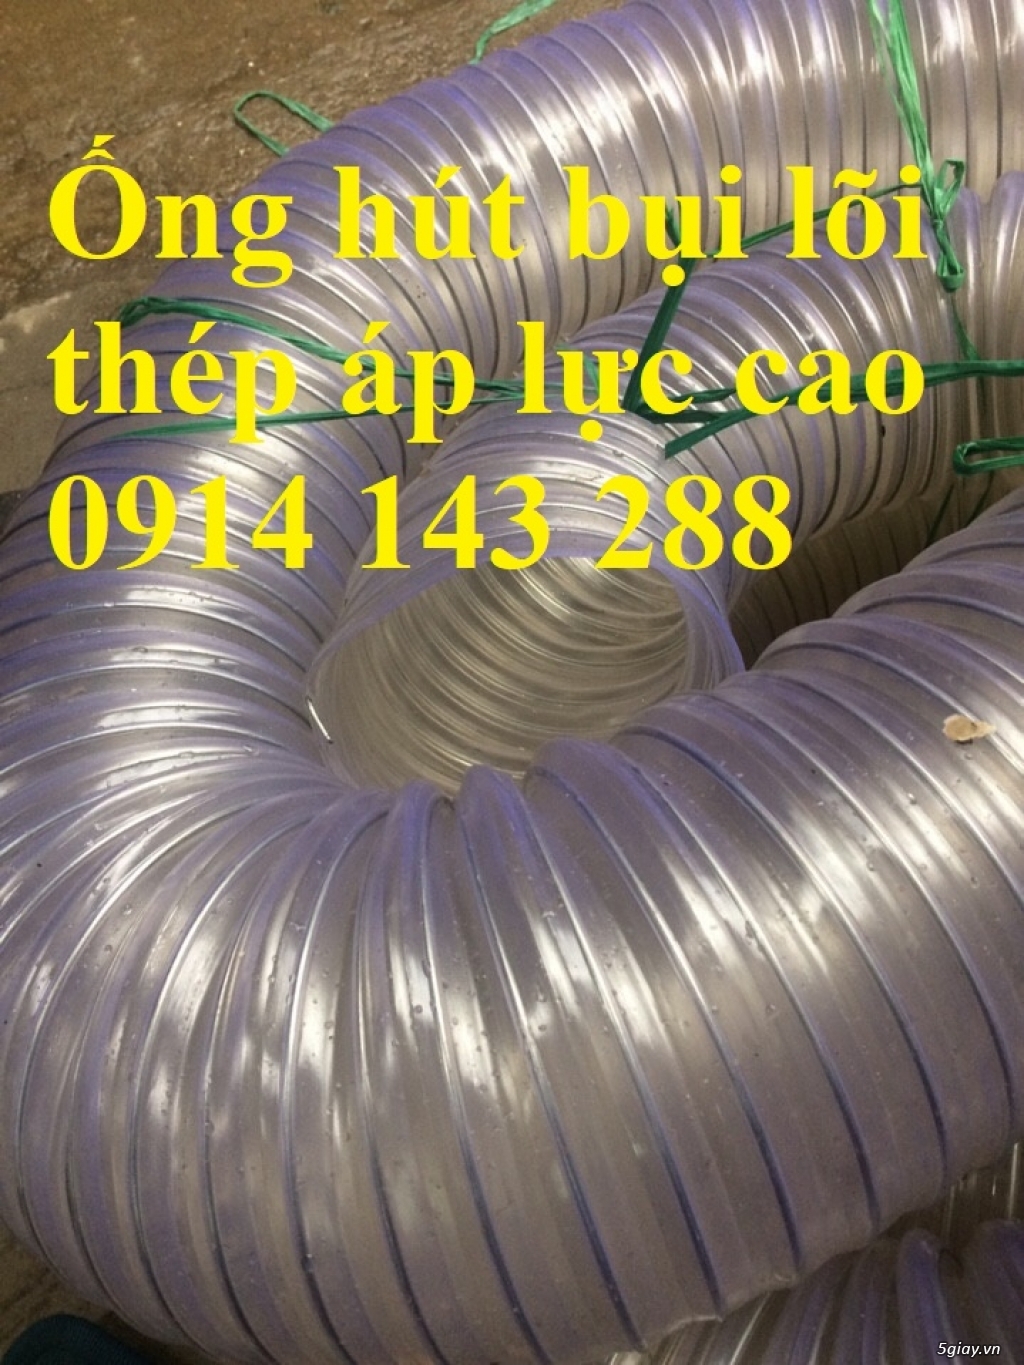 ống hút bụi gân nhựa, ống hút bụi lõi thép, ống hút công nghiệp chất lượng cao -096 717 3304 - 2